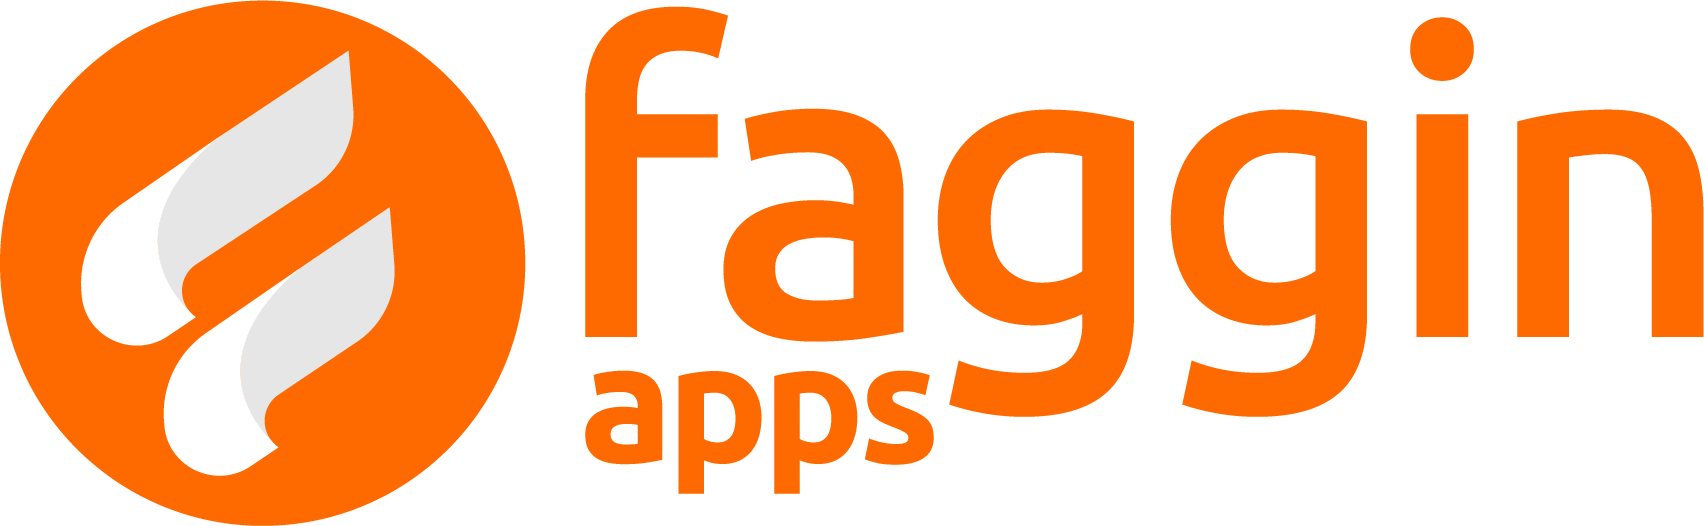 fagginapps logo